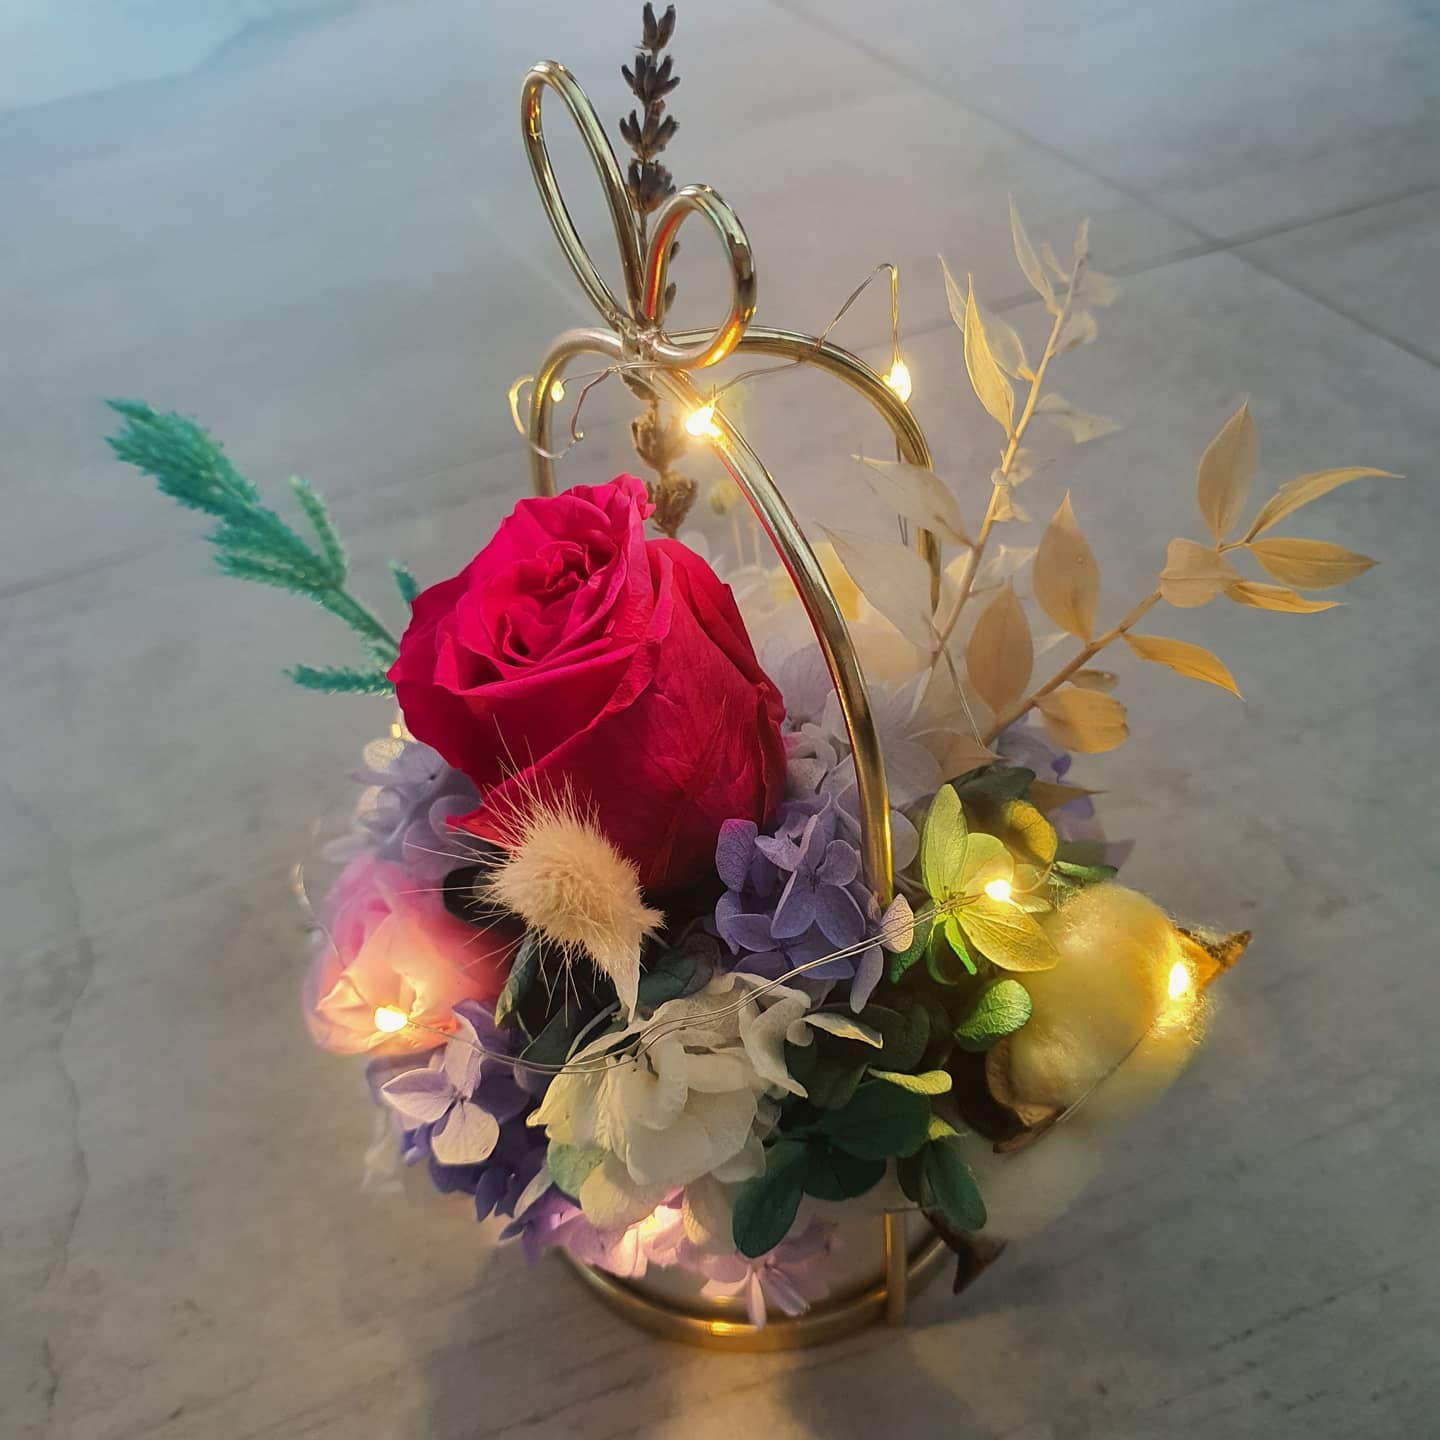 Bespoke Preserved Floral Arrangement